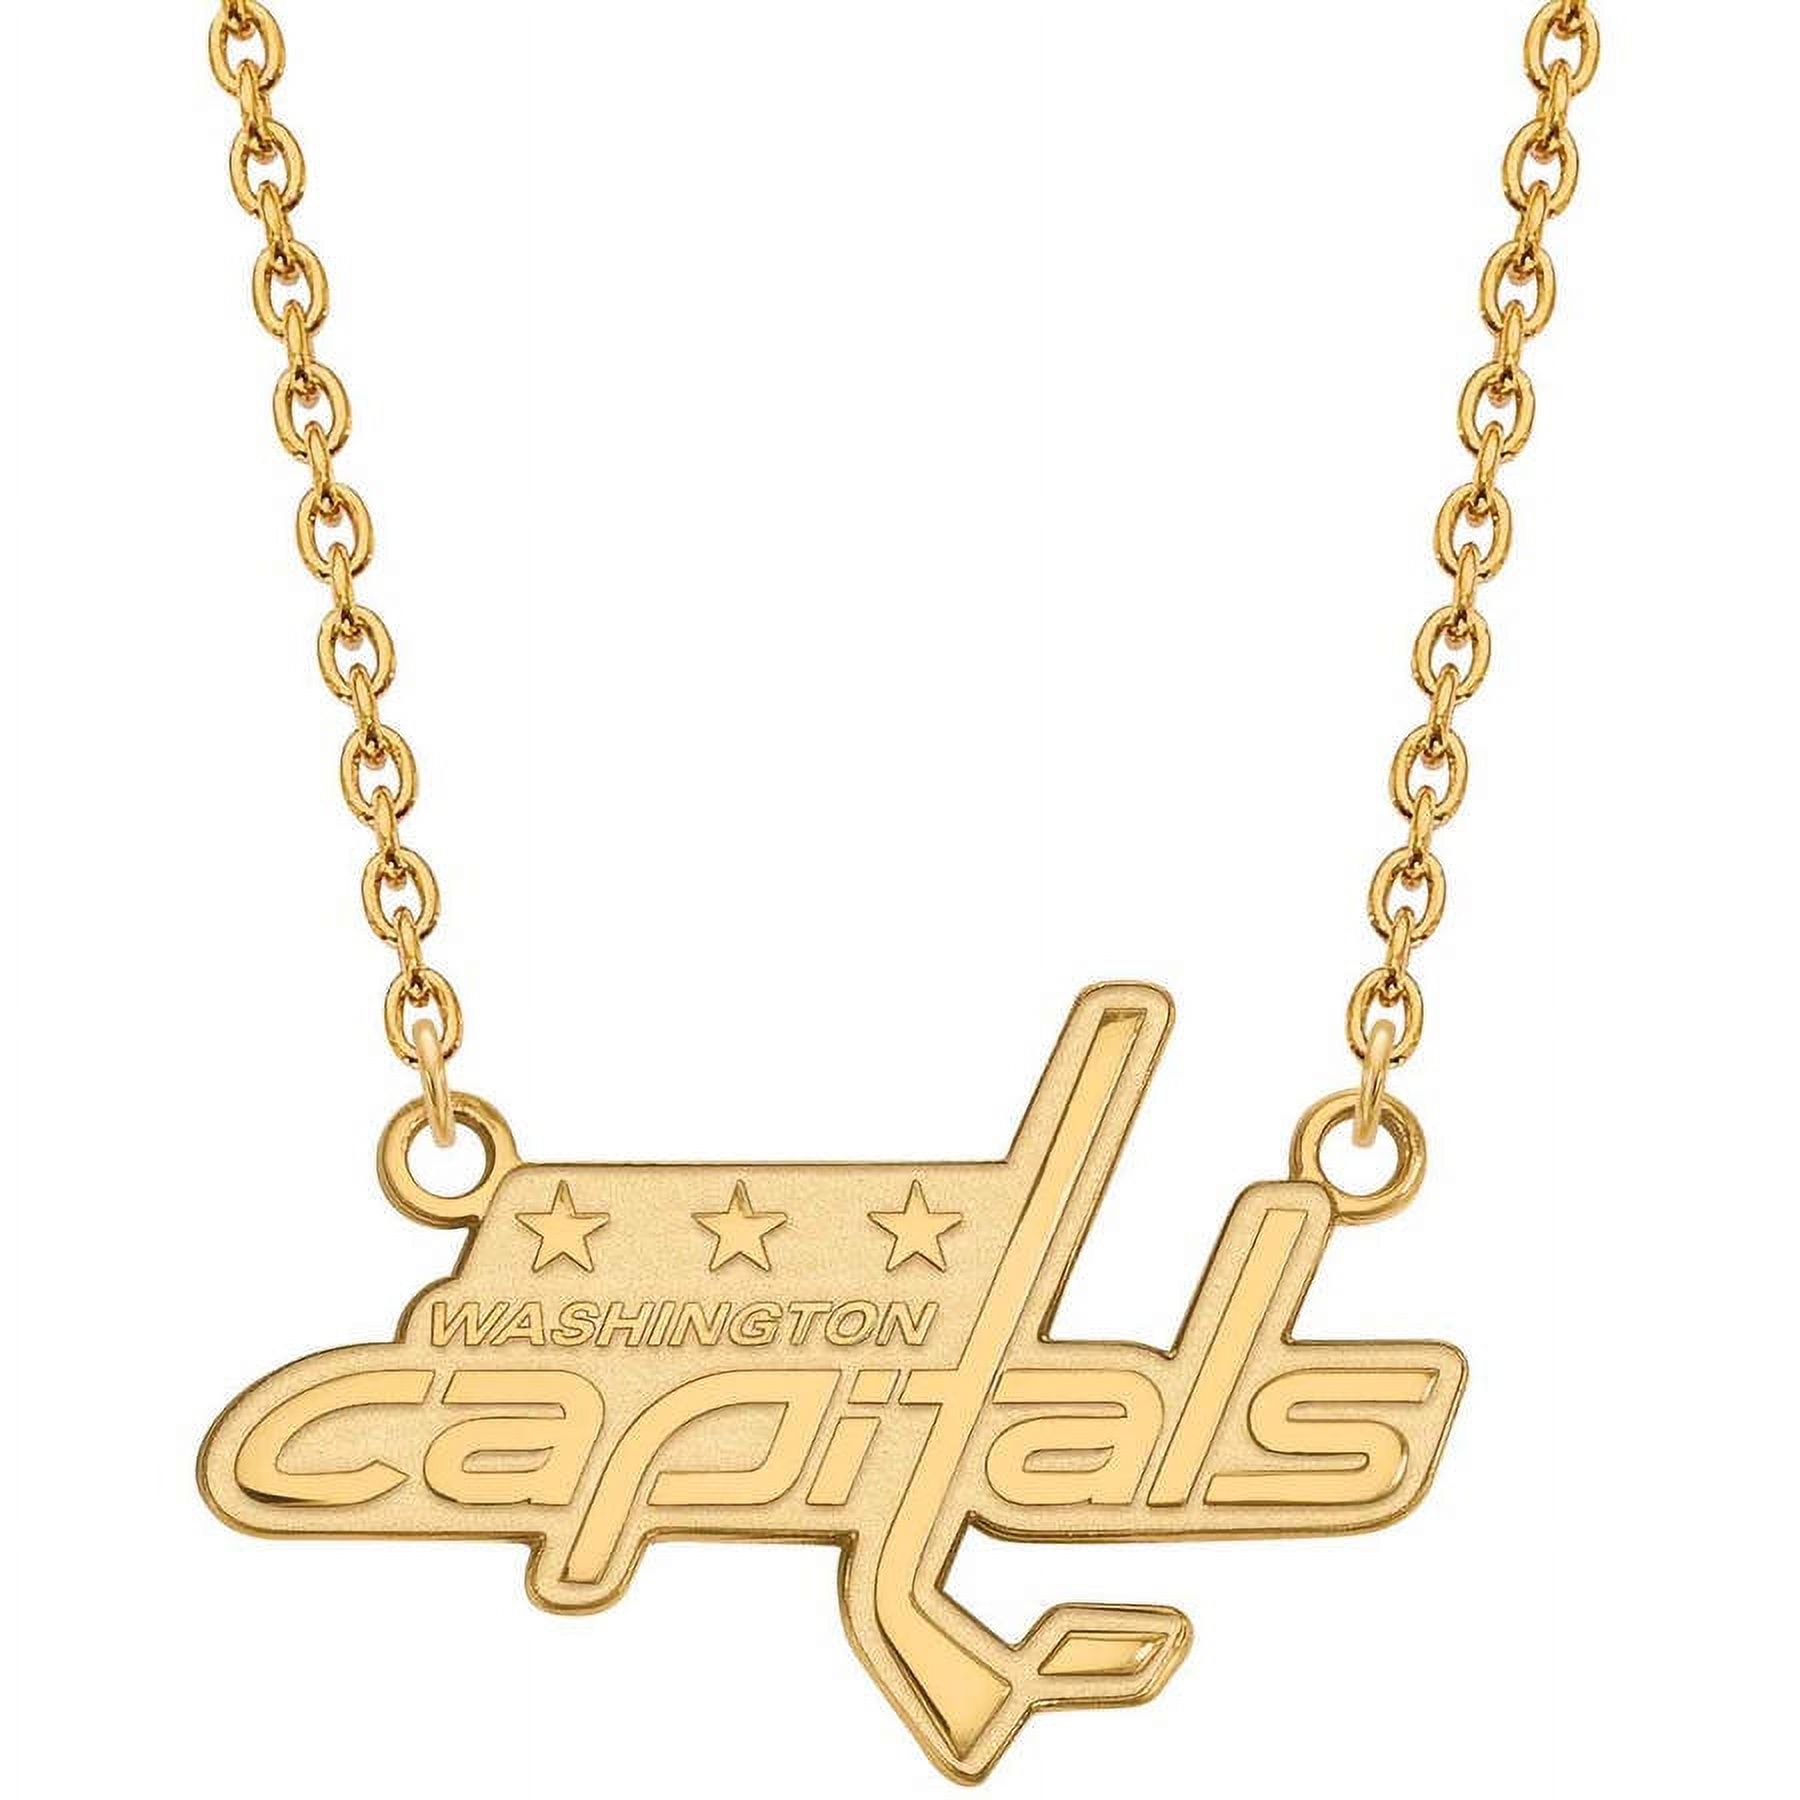 LogoArt 14 Karat Yellow Gold NHL Washington Capitals Large Pendant with Necklace - image 1 of 5